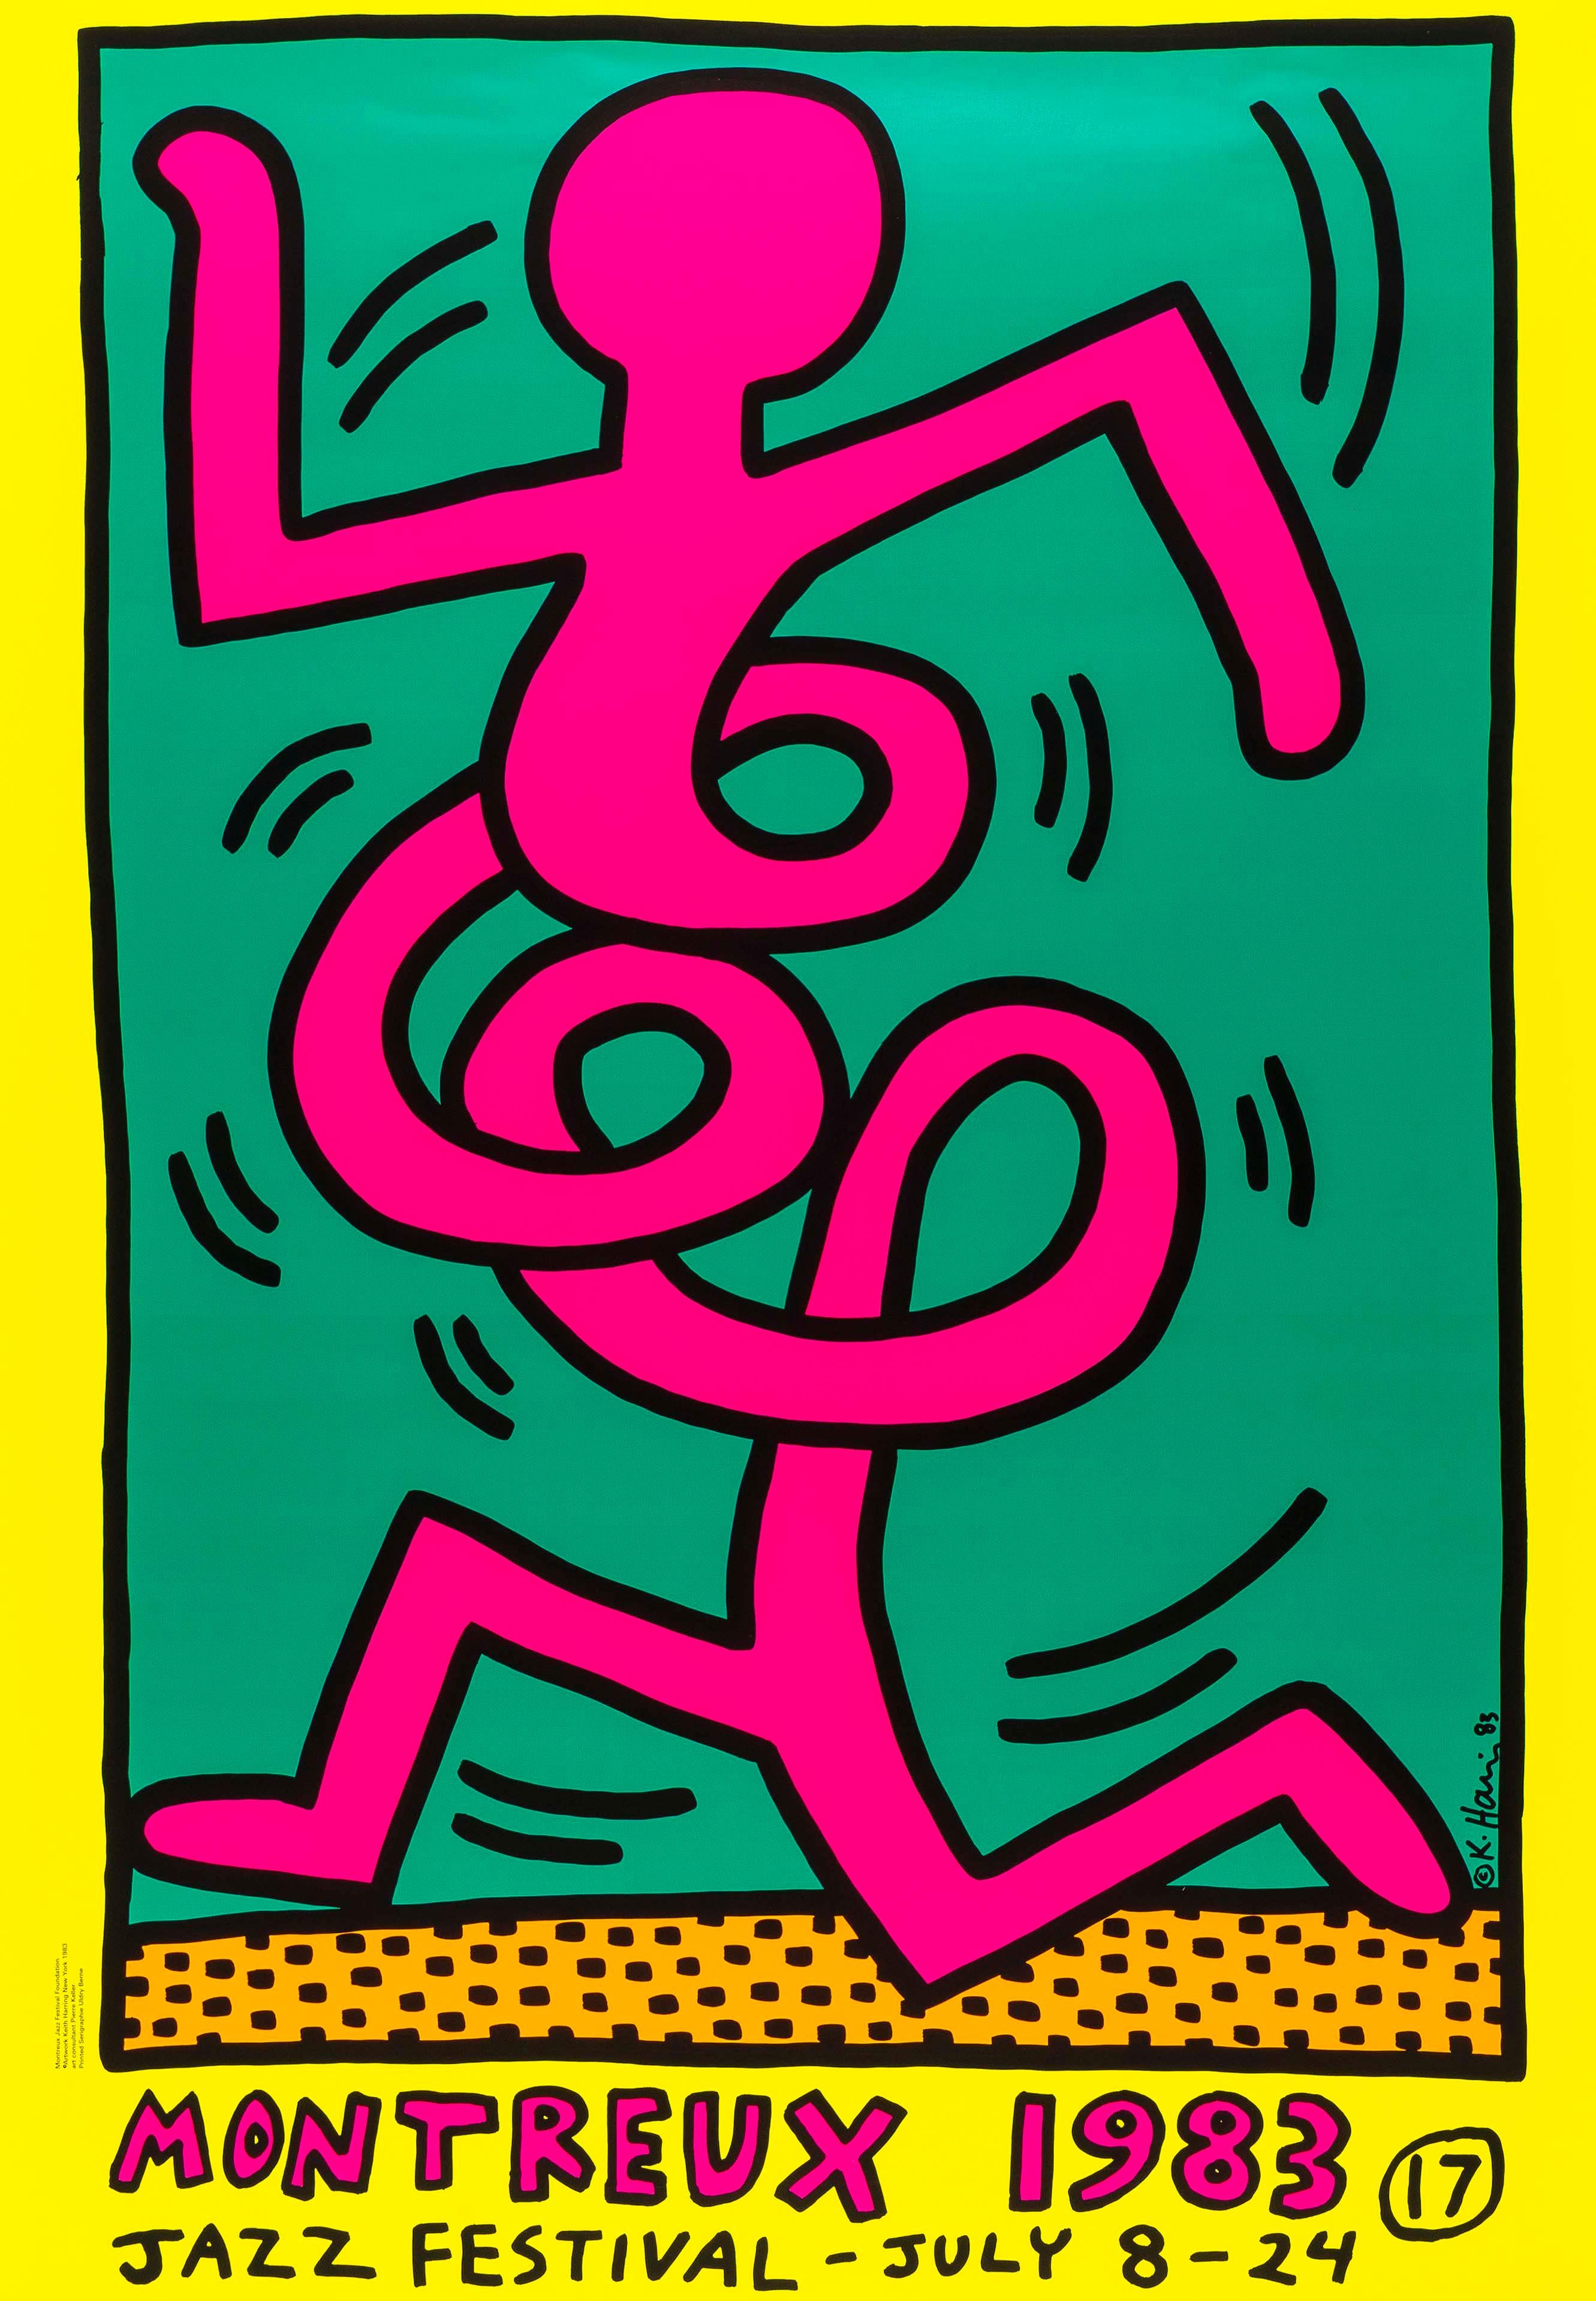 Montreux Jazz Festival – Druck, Siebdruck, zeitgenössisch, von Keith Haring